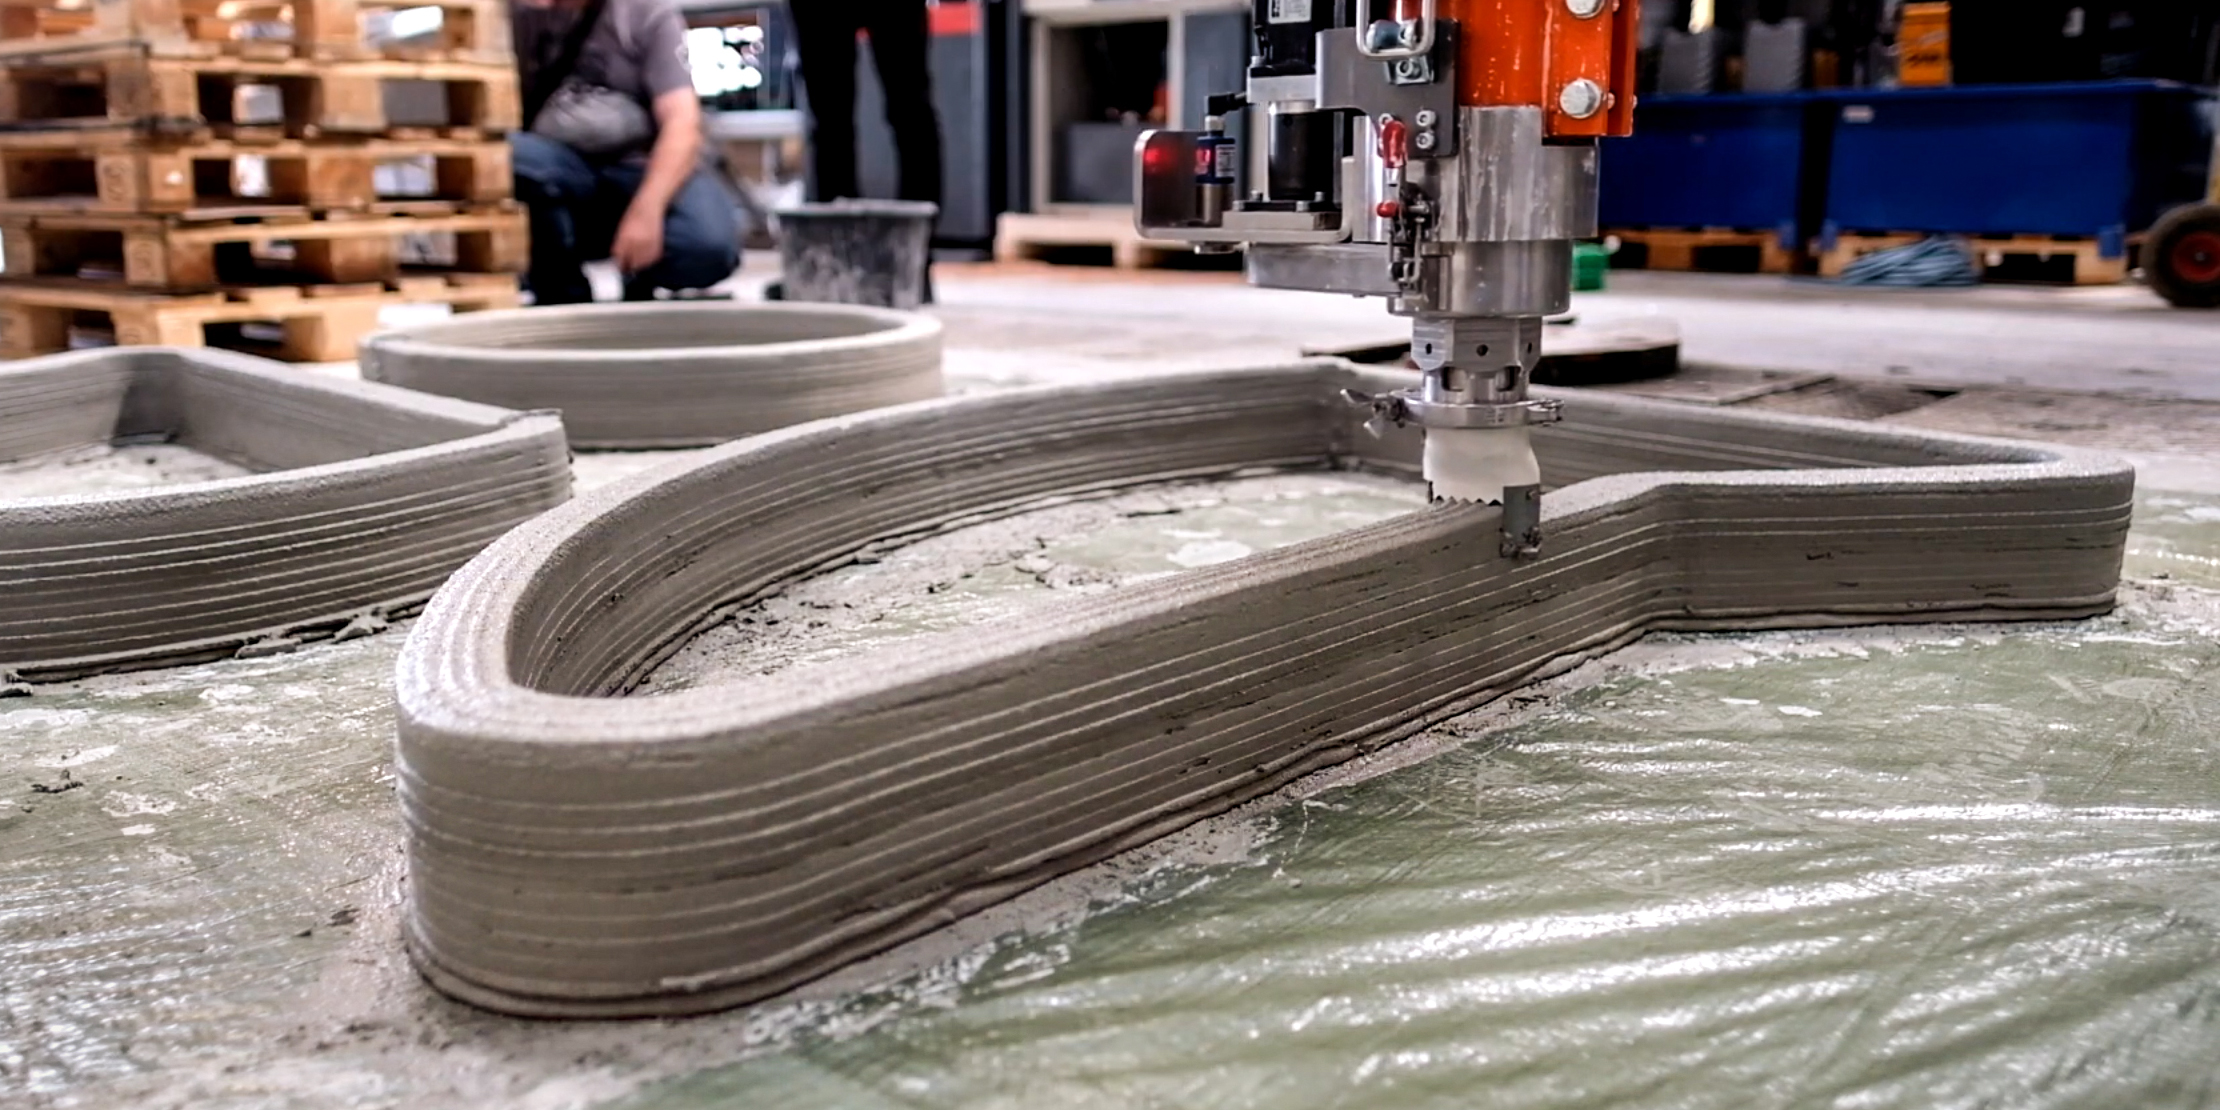 tjener Slagskib læber Fremtidens ingeniører printer beton i 3D - DTU Engineering Technology